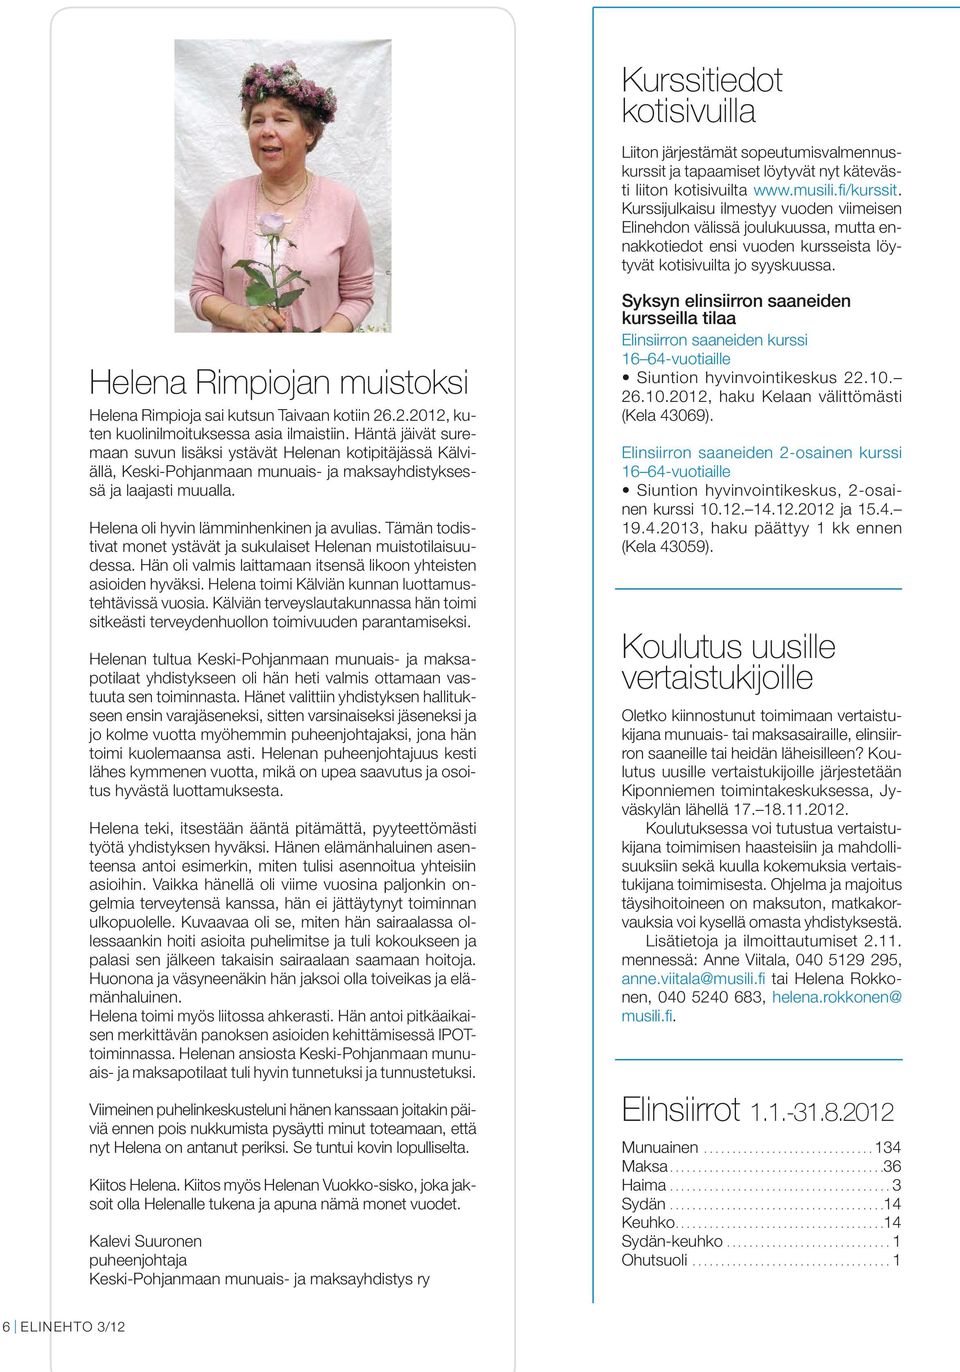 Helena Rimpiojan muistoksi Helena Rimpioja sai kutsun Taivaan kotiin 26.2.2012, kuten kuolinilmoituksessa asia ilmaistiin.